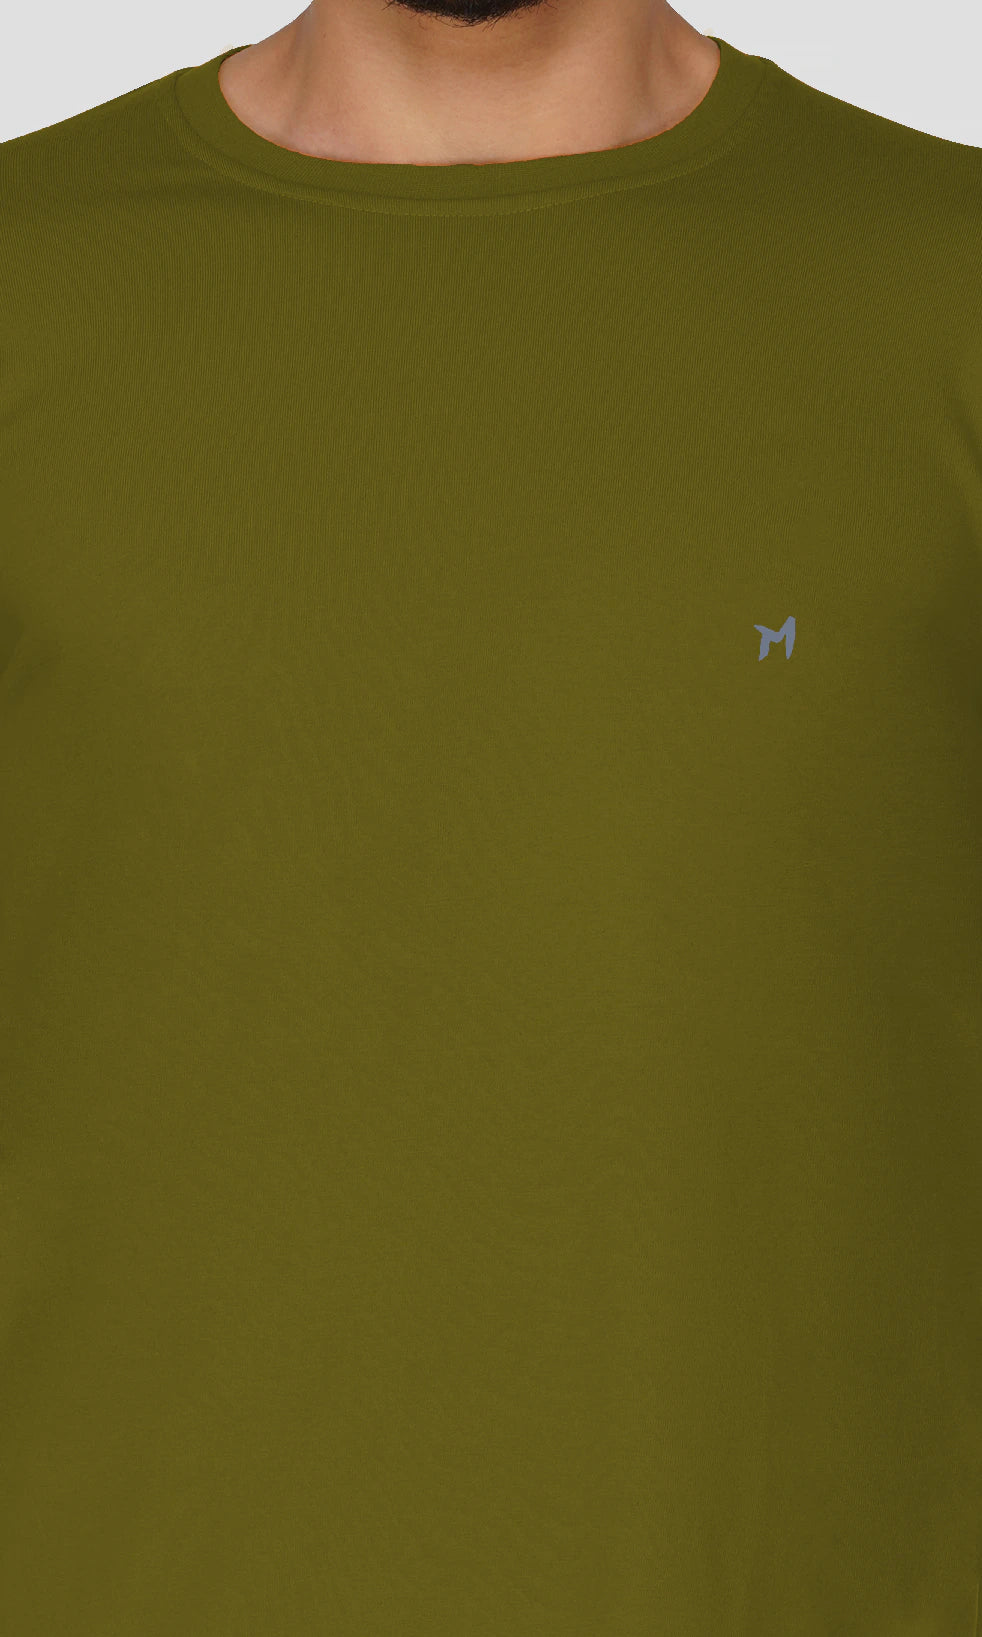 Mebadass Cotton Mens Fullsleeve Regular Size T-shirt - Olive Green